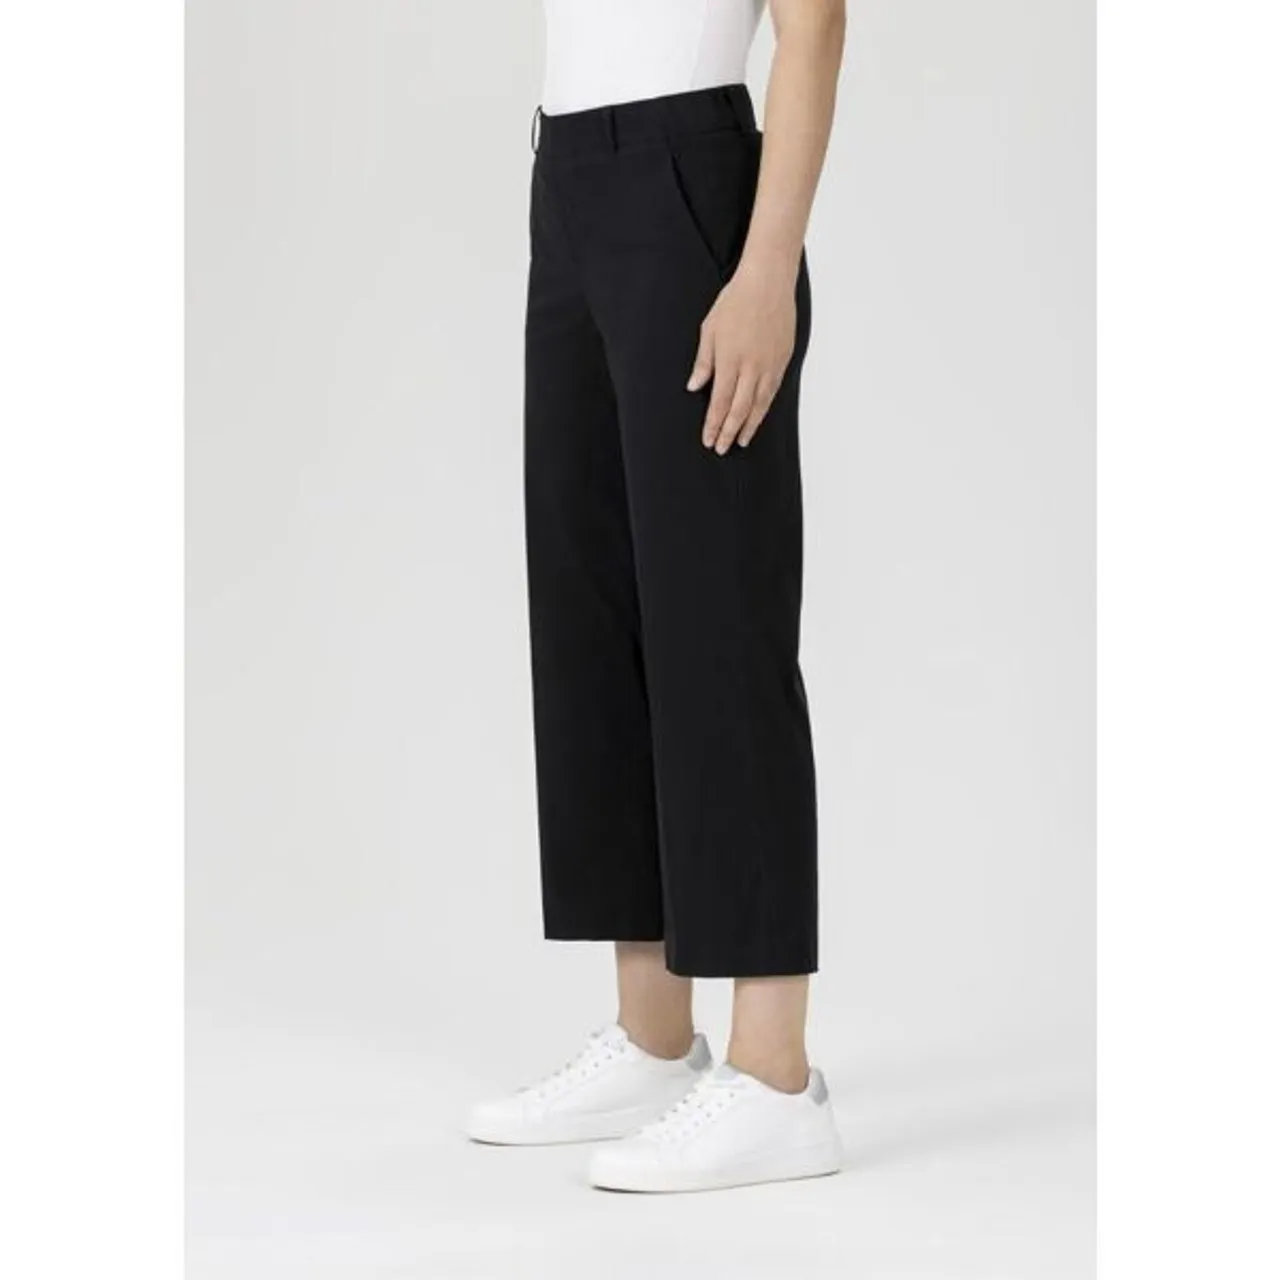 Culotte STEHMANN "FENJA" Gr. 38, N-Gr, schwarz, 900 Damen Hosen Culottes Hosenröcke mit elastischem Bund und geradem Bein